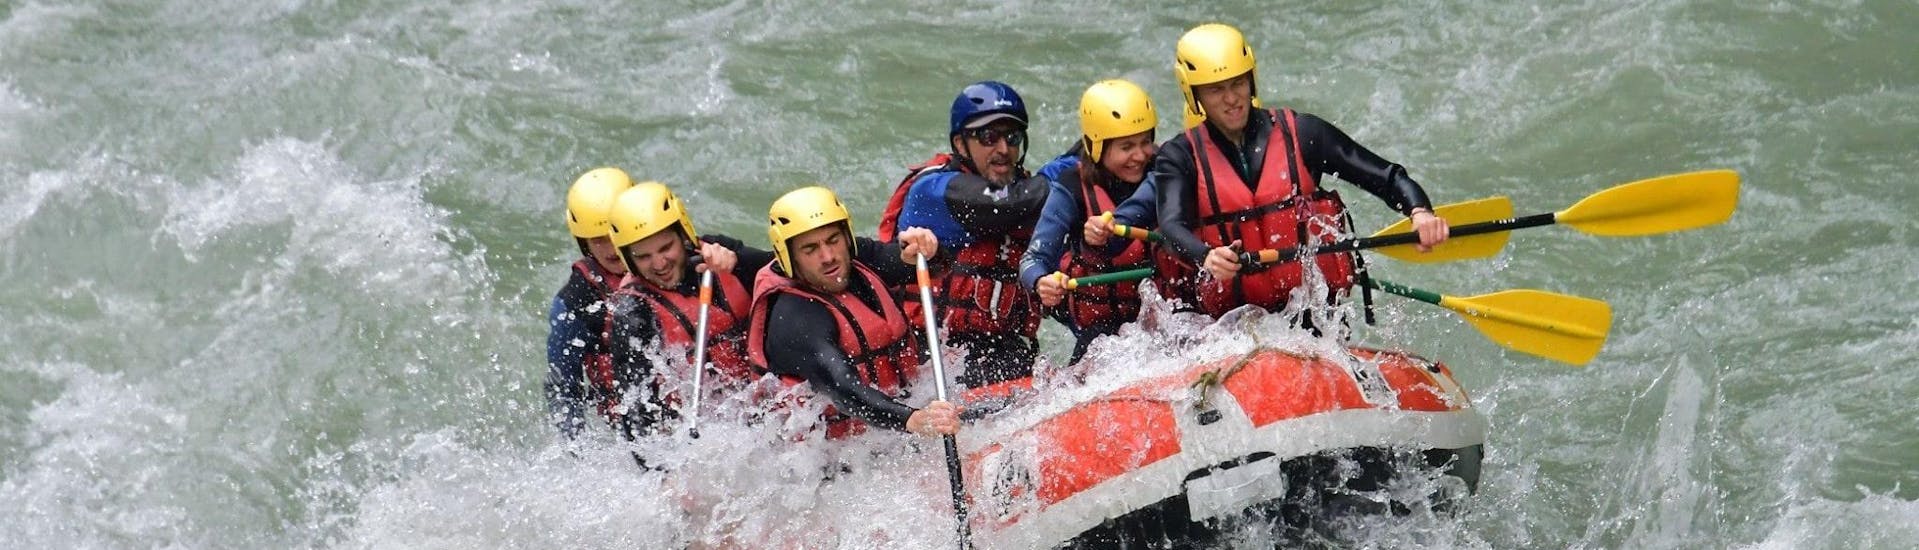 Eine Gruppe von Freunden nimmt auf ihrer Rafting-Entdeckungstour mit 7 Aventures einige Stromschnellen auf dem Fluss Dranse in Angriff.